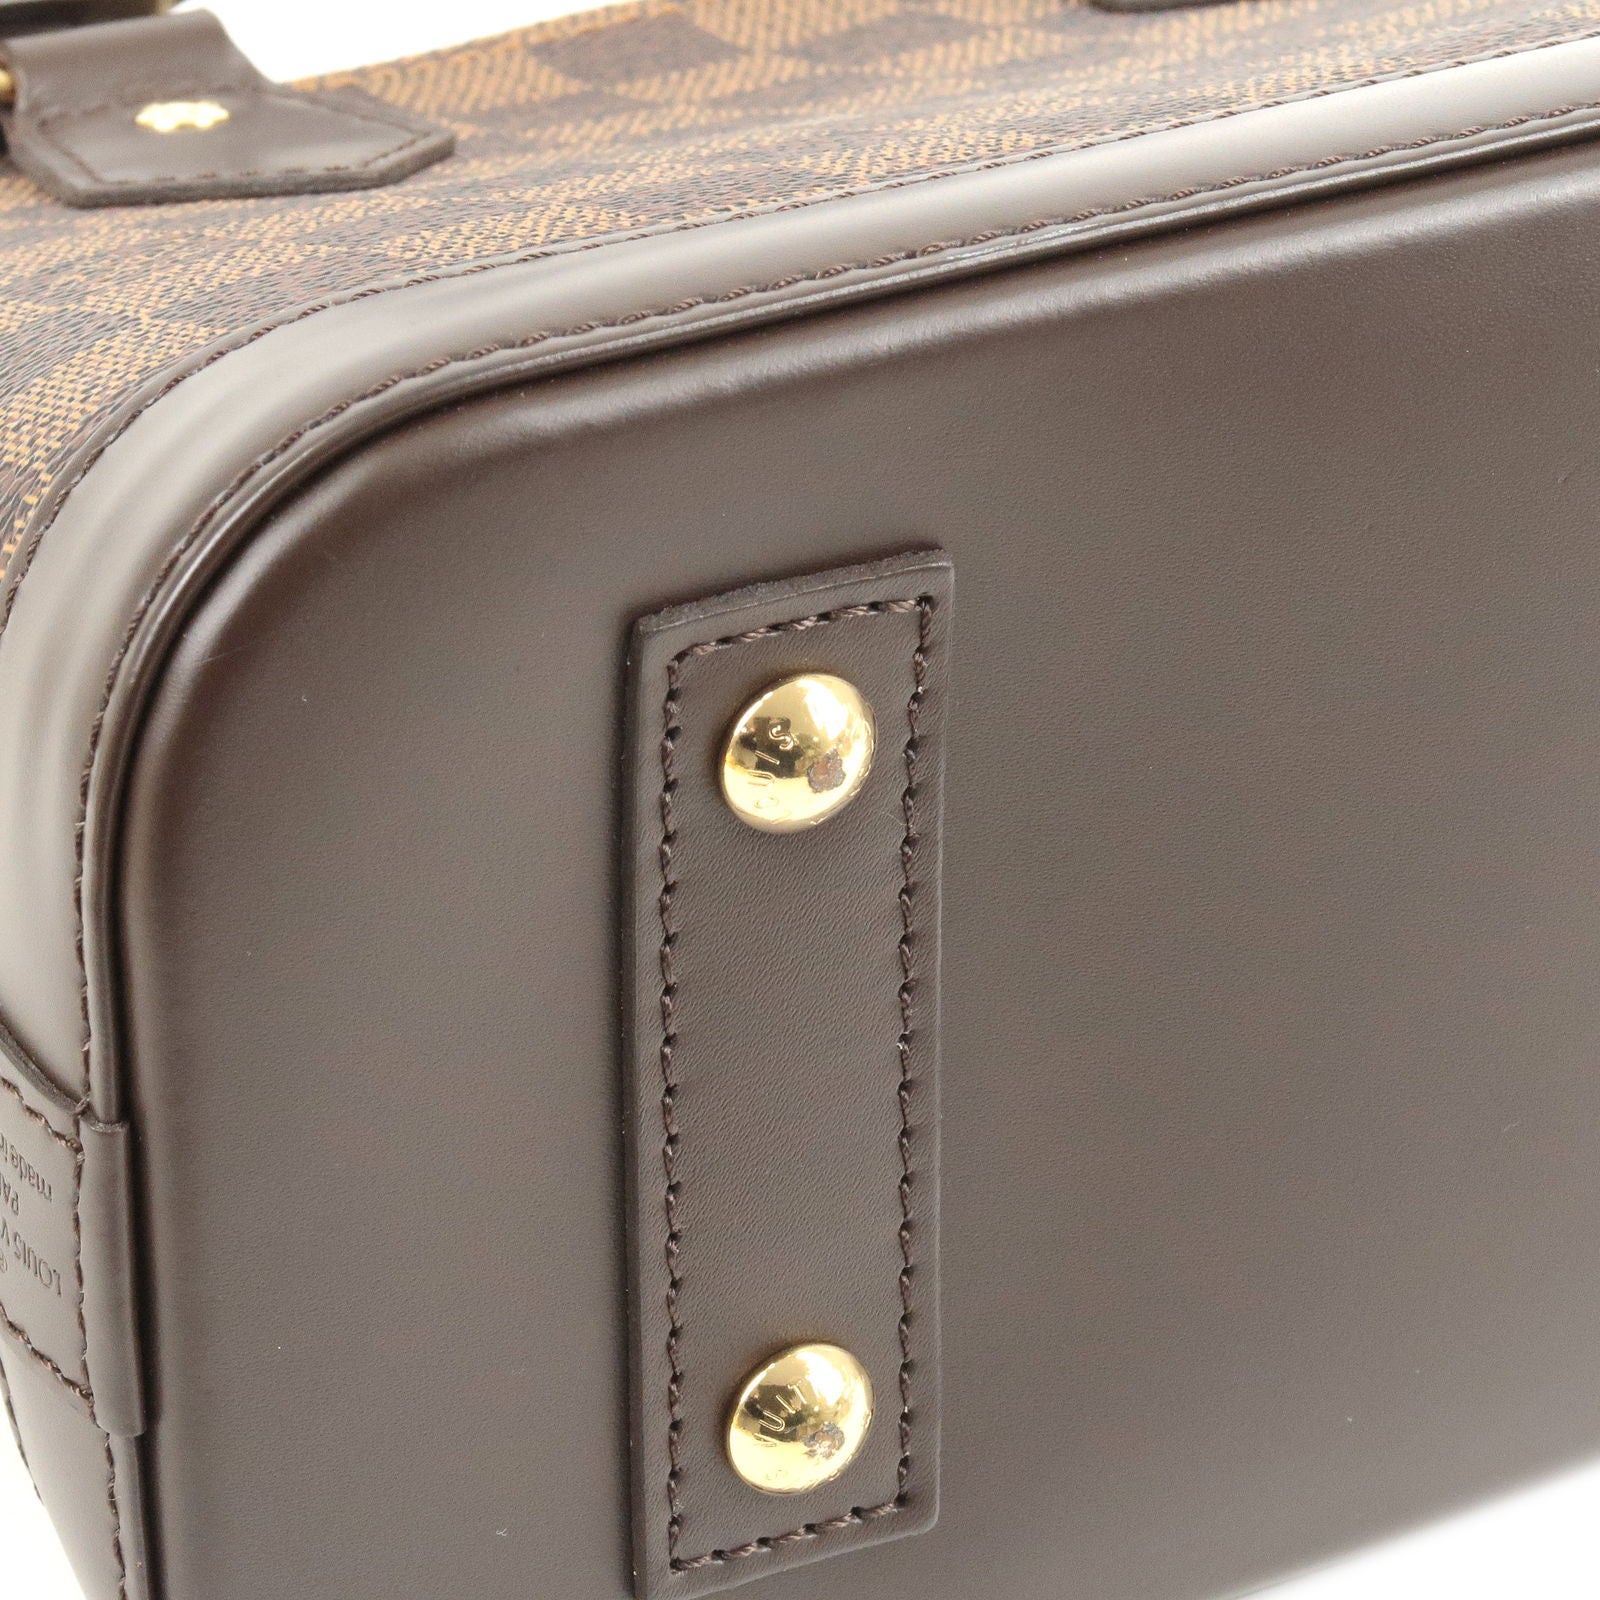 Louis Vuitton, Bags, Louis Vuitton Alma Mm Handbag Vi922